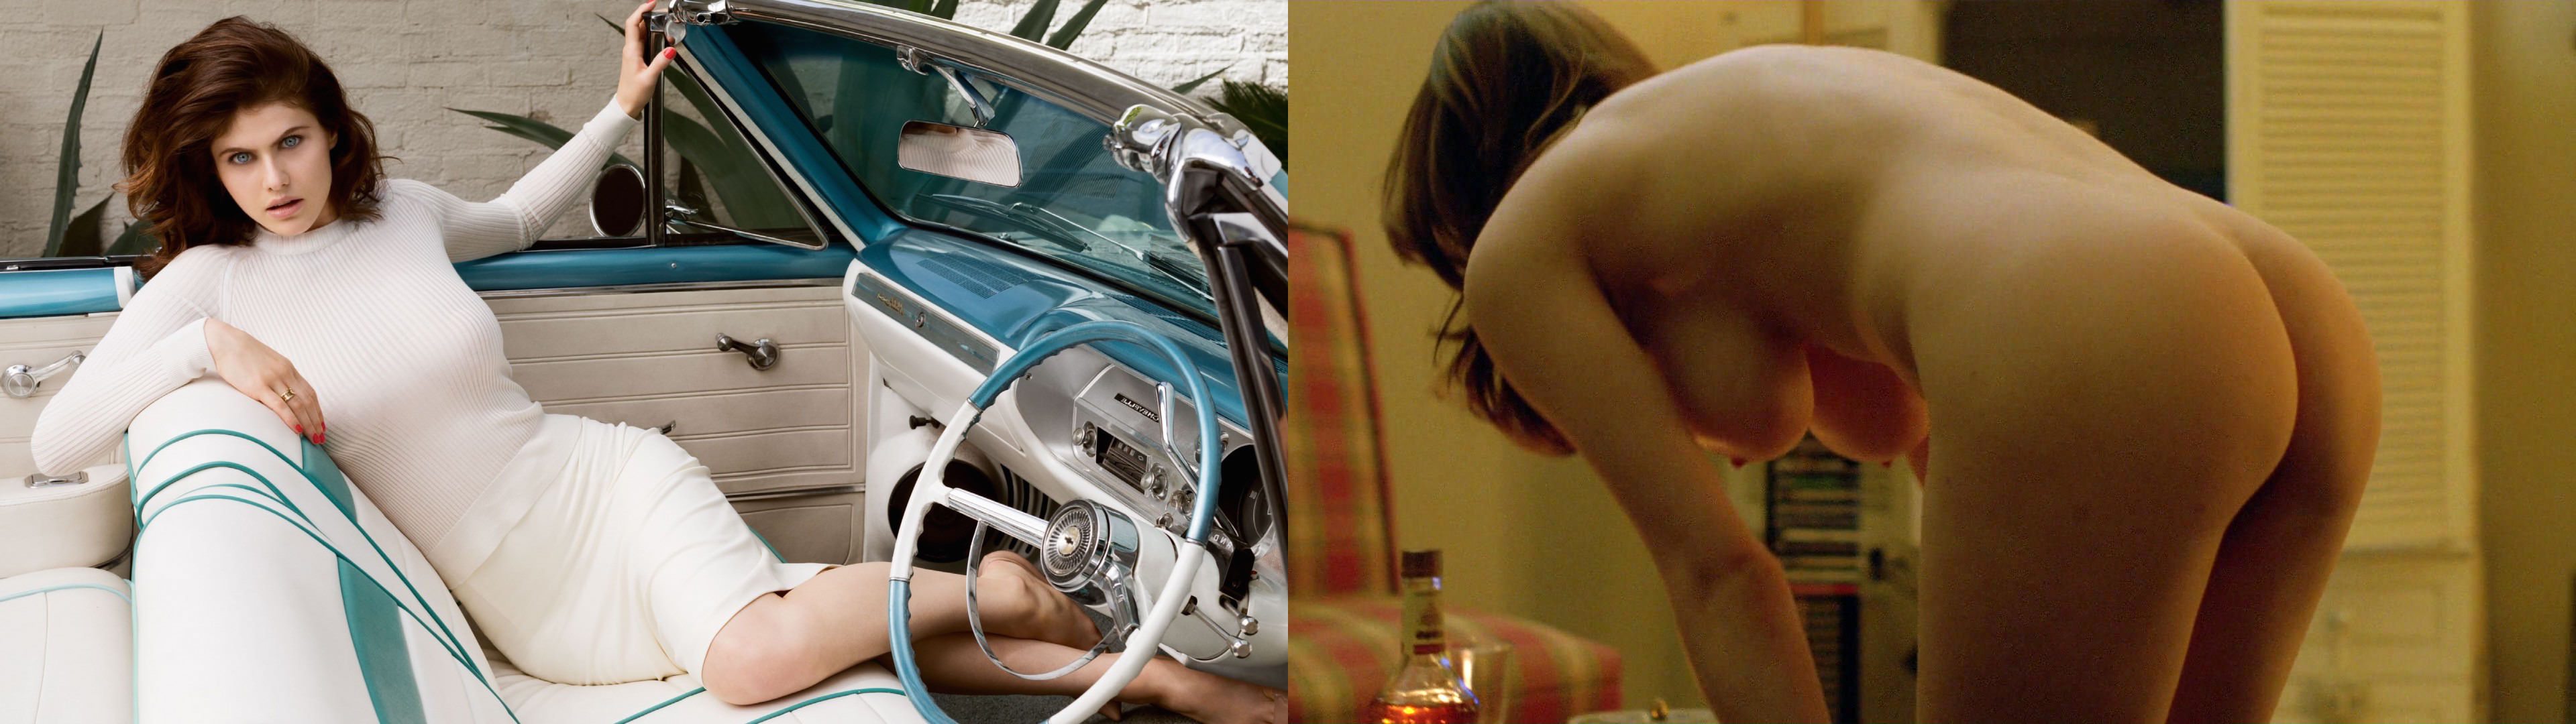 Alexandra daddario nackt szenen - 🧡 Slideshow de Alexandra Daddario - Jer....